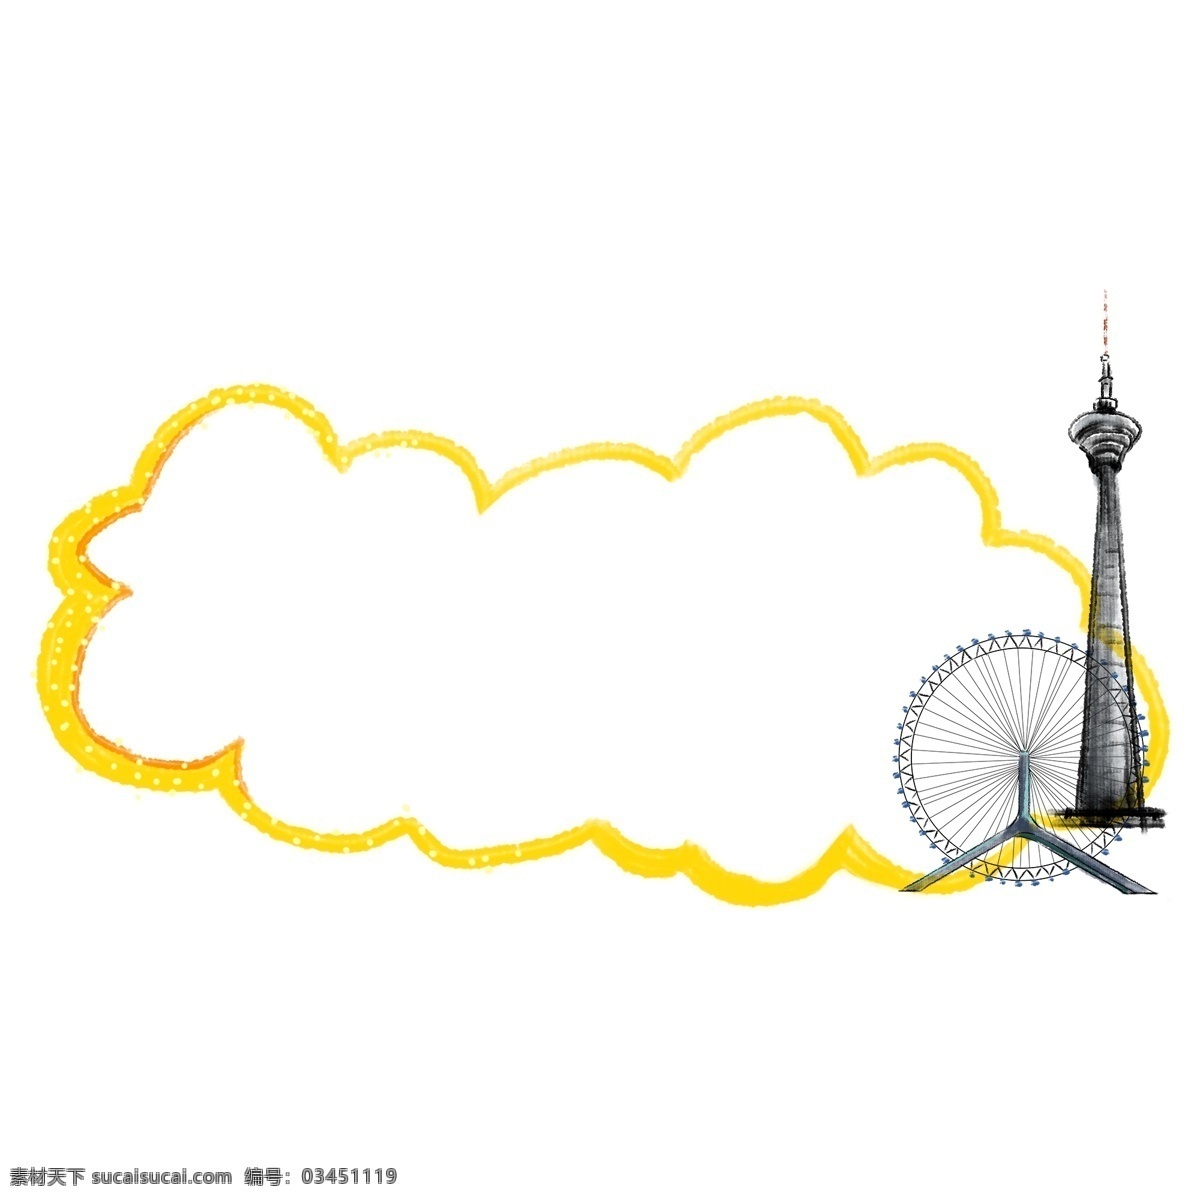 黄色 旅游 建筑 边框 漂亮 手绘 卡通 装饰 插画